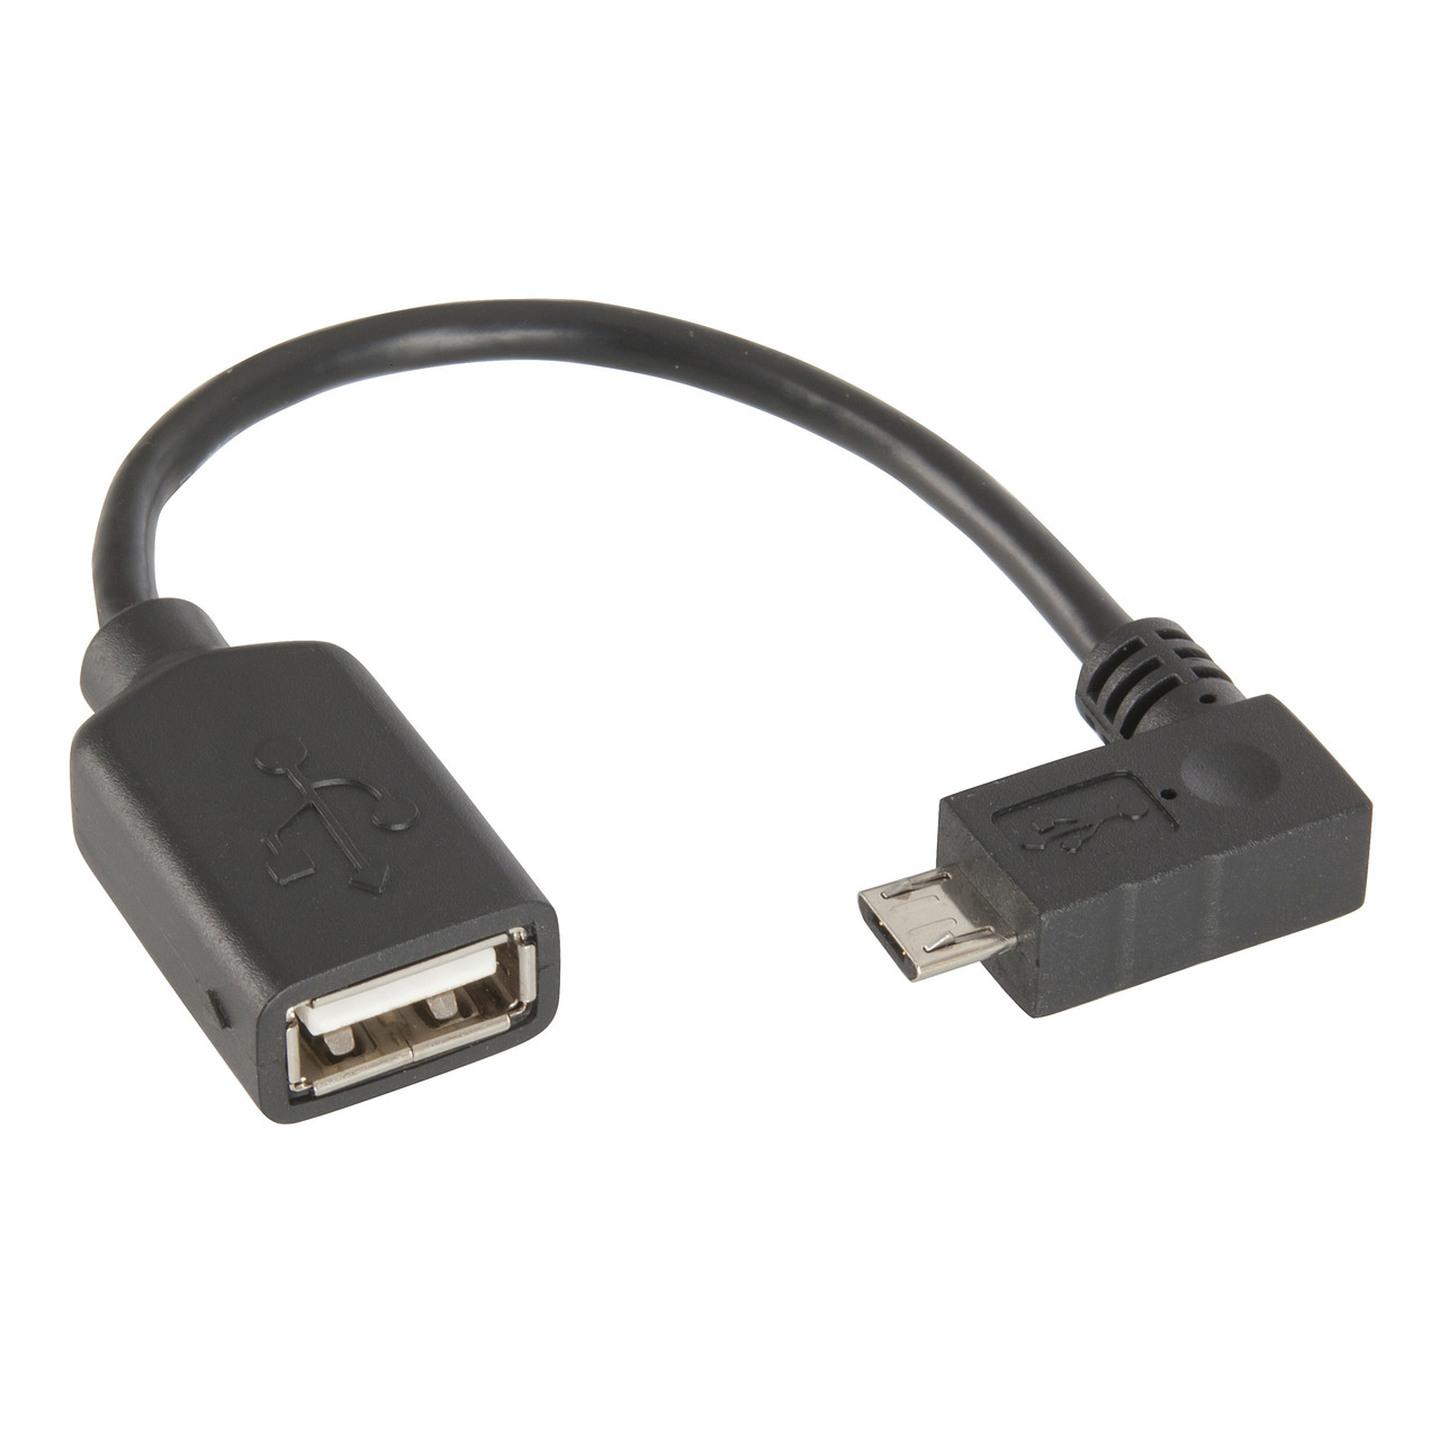 USB2.0 OTG Female A Plug to Right-Angle Micro Male B Plug